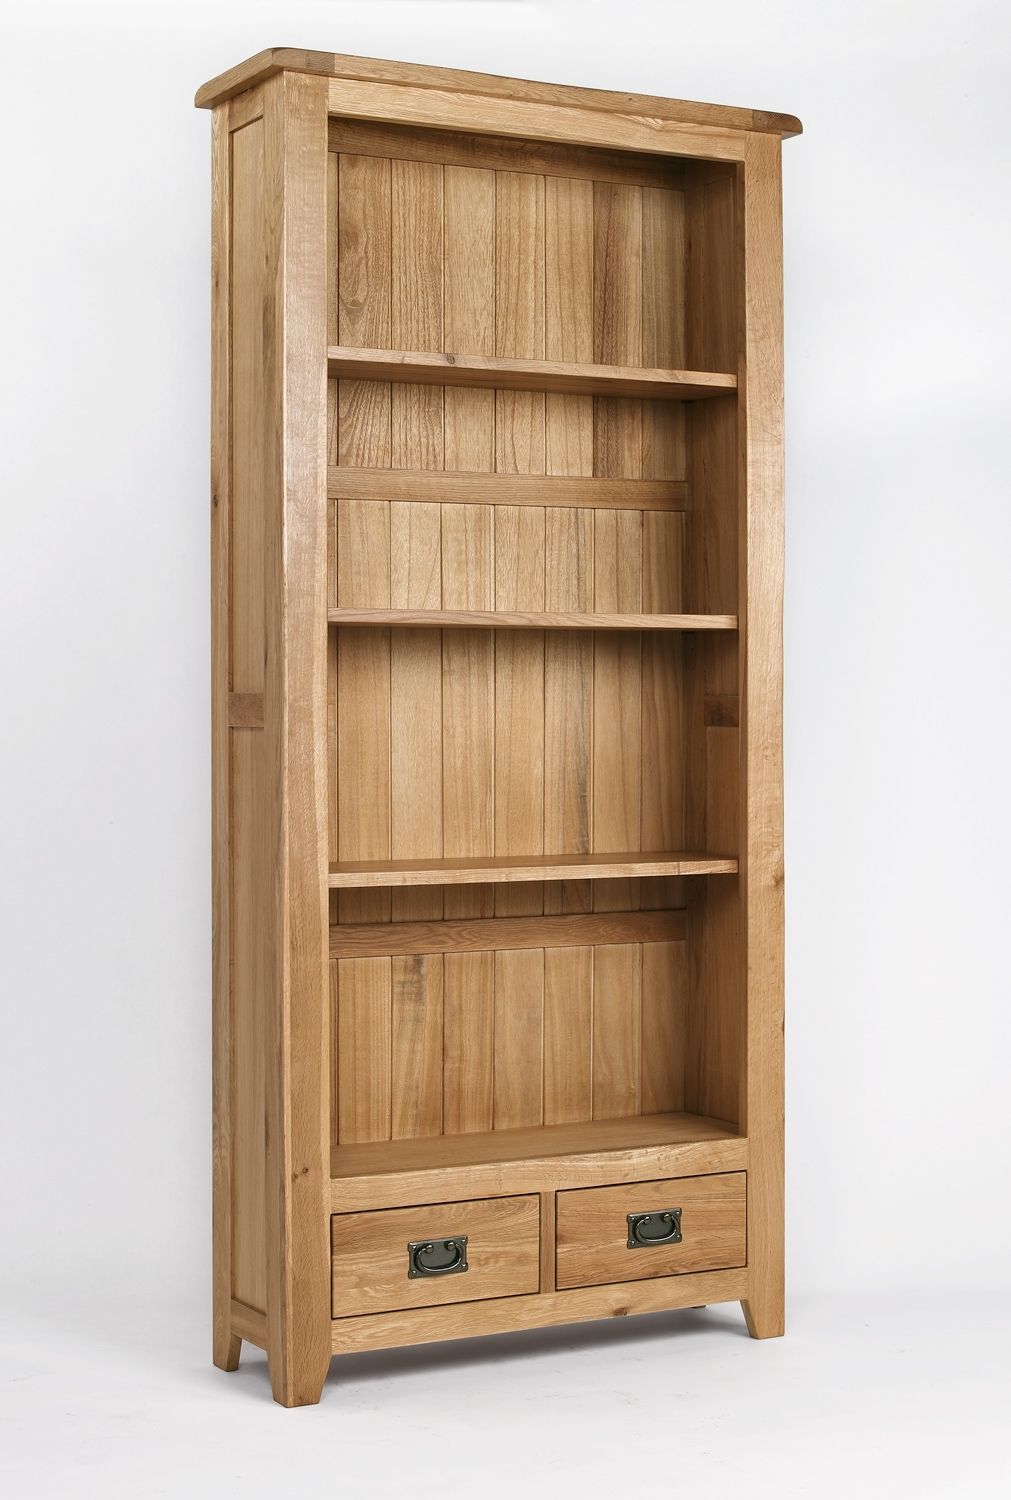 Wooden Bookshelves Idi Design Regarding Wooden Bookshelves (Photo 3 of 14)